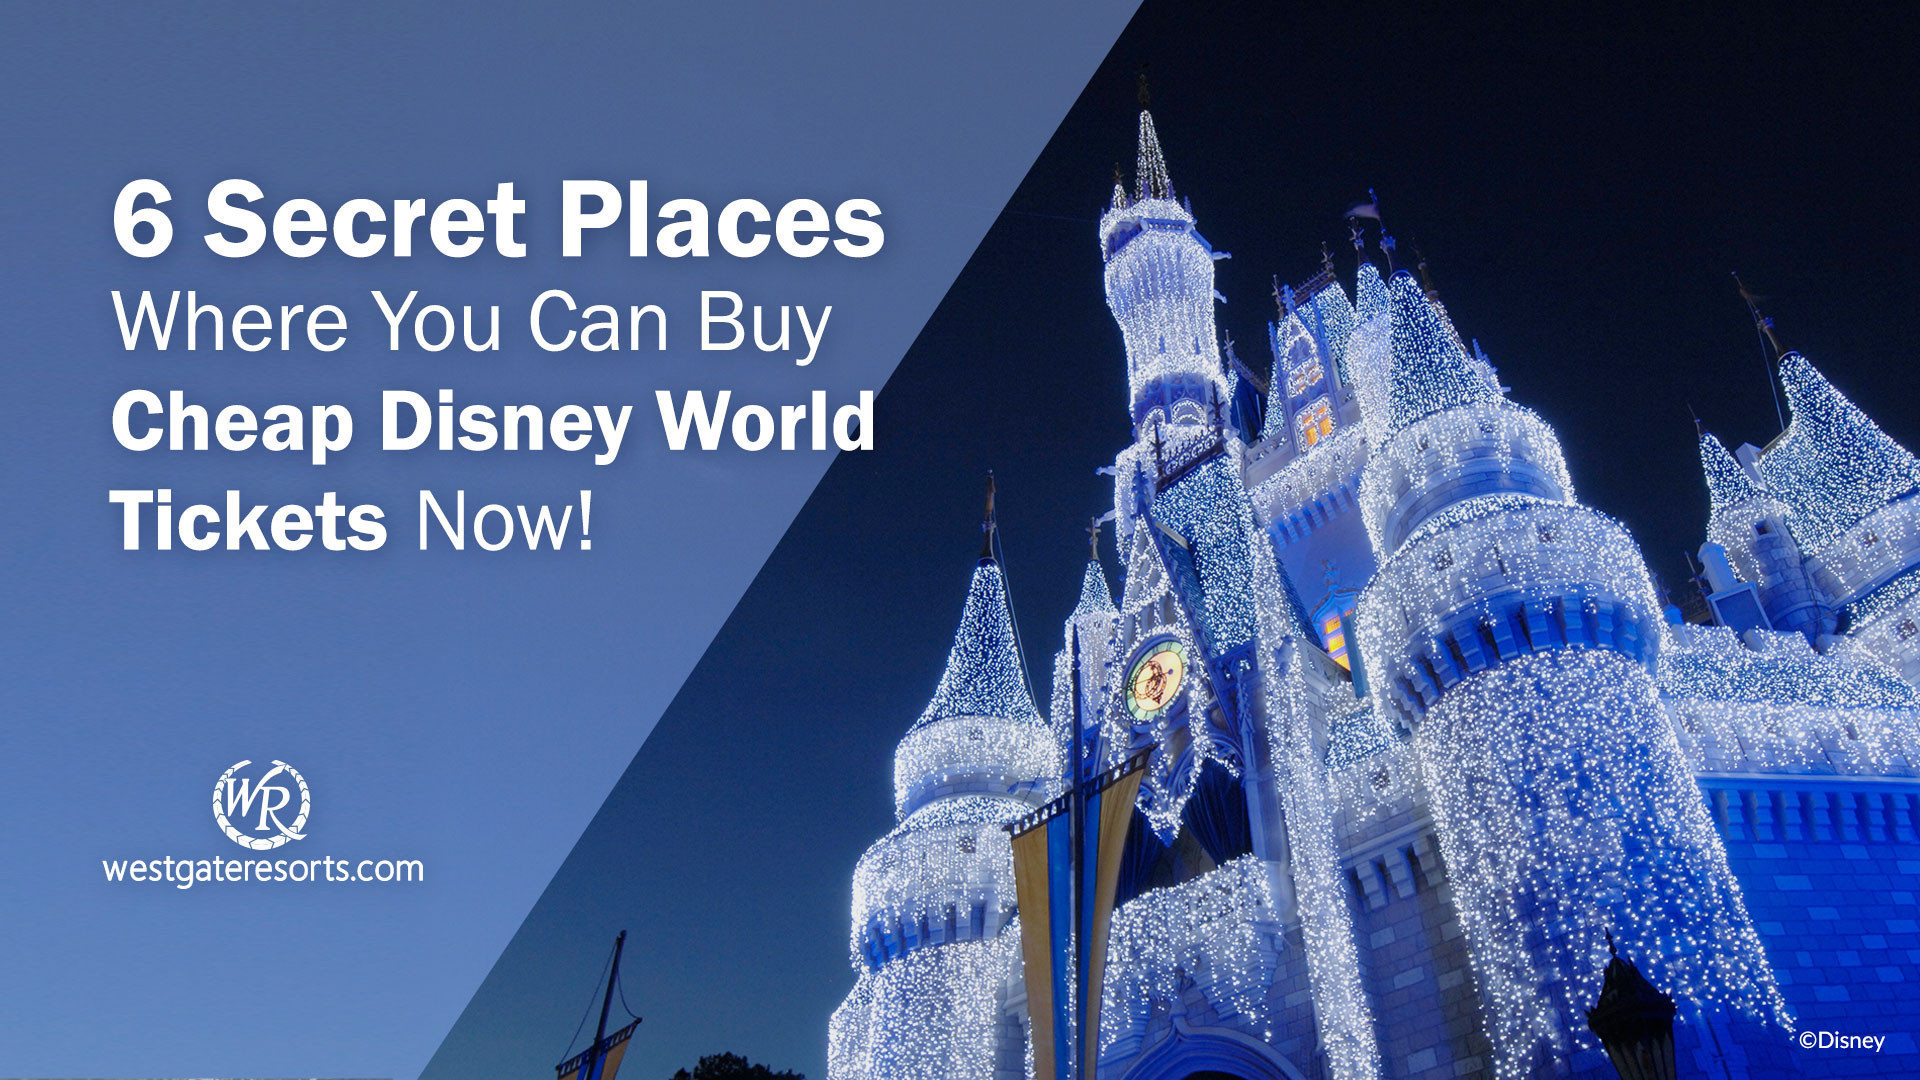 ¡6 lugares secretos donde puedes comprar boletos baratos de Disney World ahora! | Entradas Disney Baratas